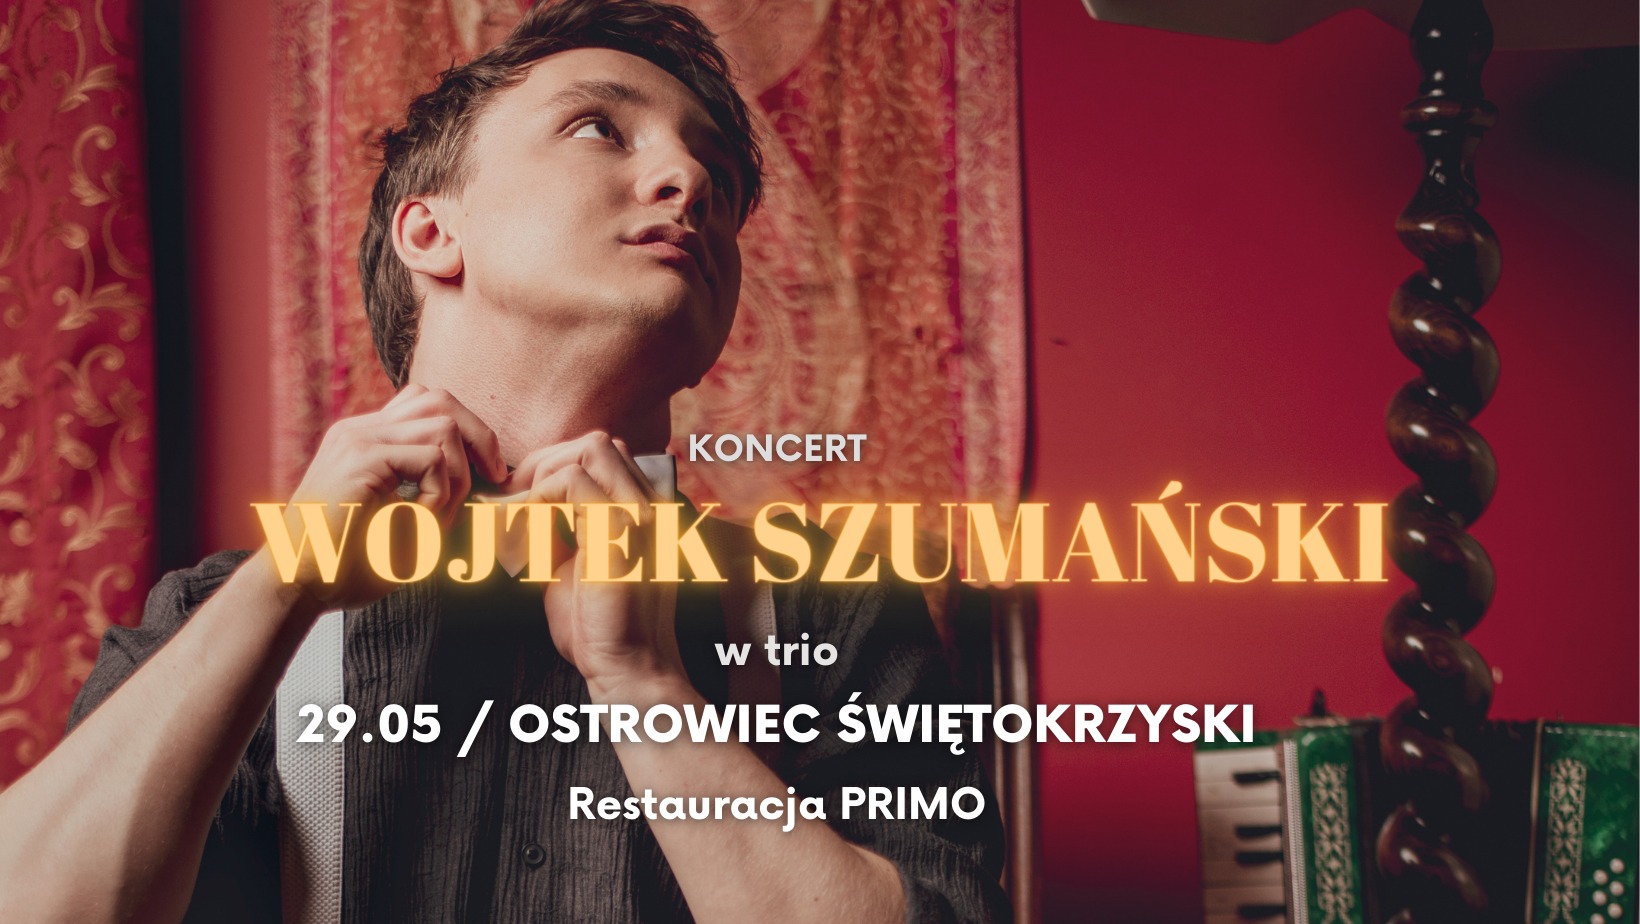 Wojtek Szumański | OSTROWIEC ŚWIĘTOKRZYSKI | Koncert w trio